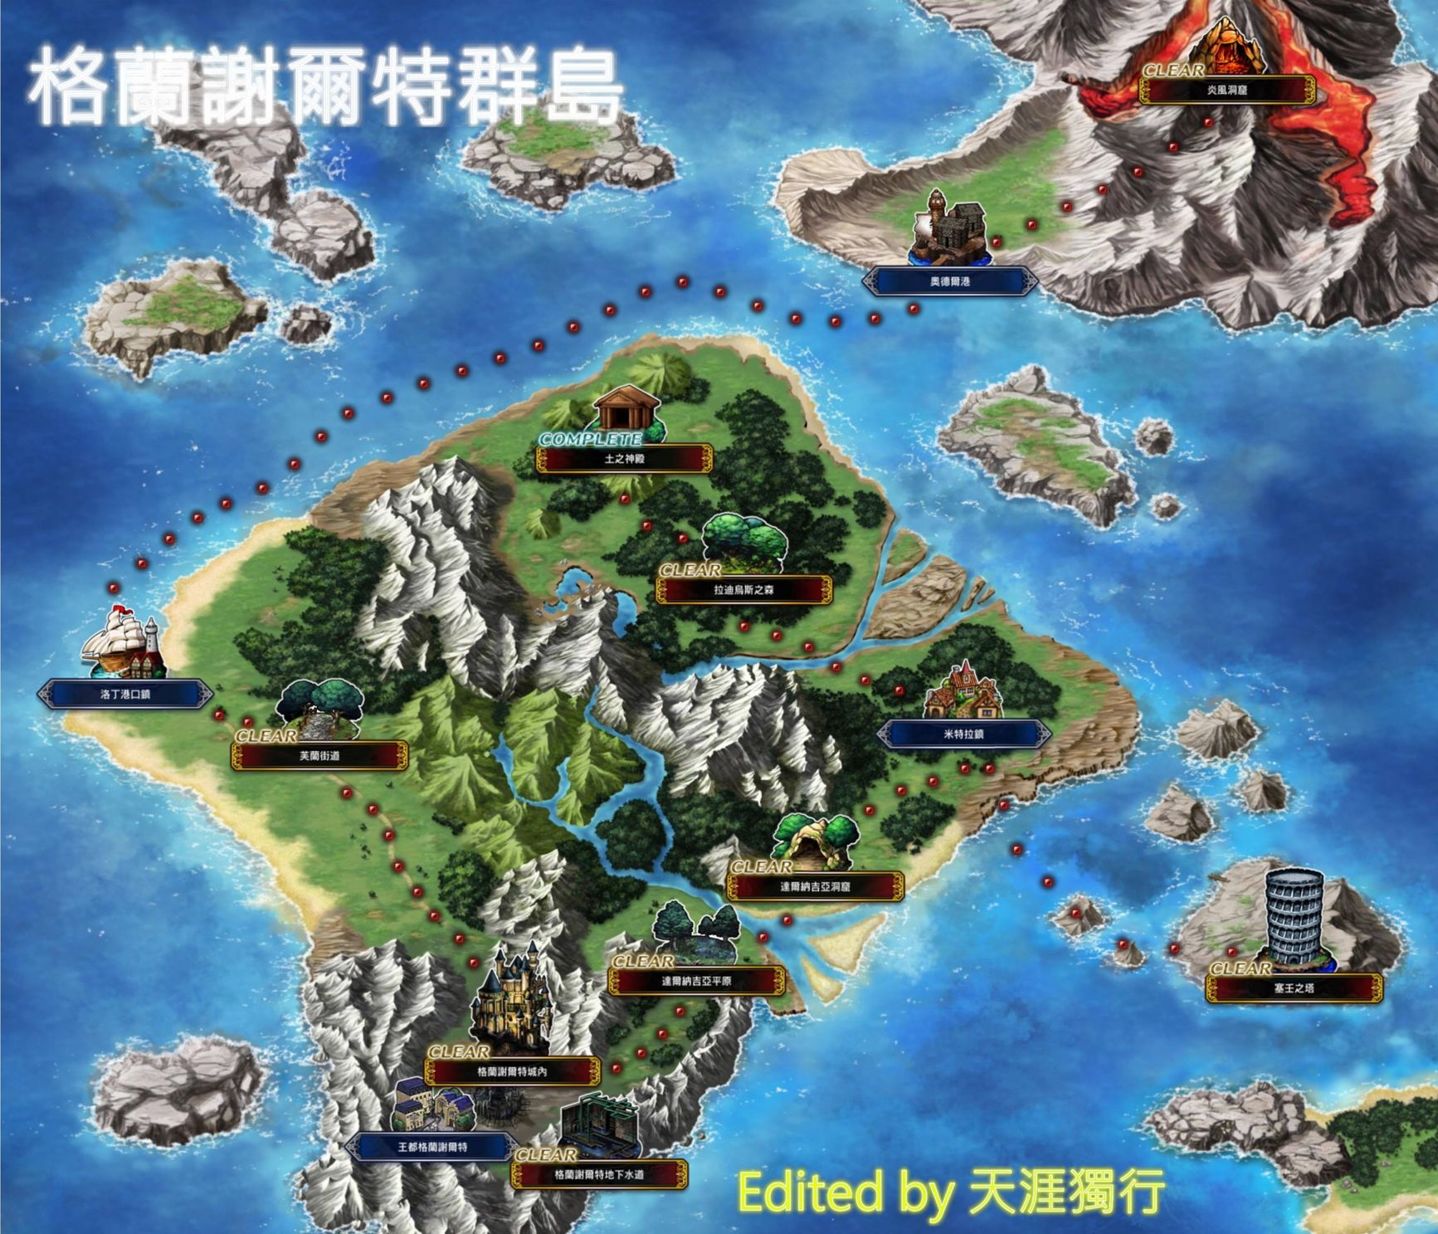 攻略 國際版主線地圖及支線任務列表 9 11更新 Final Fantasy Brave Exvius 哈啦板 巴哈姆特